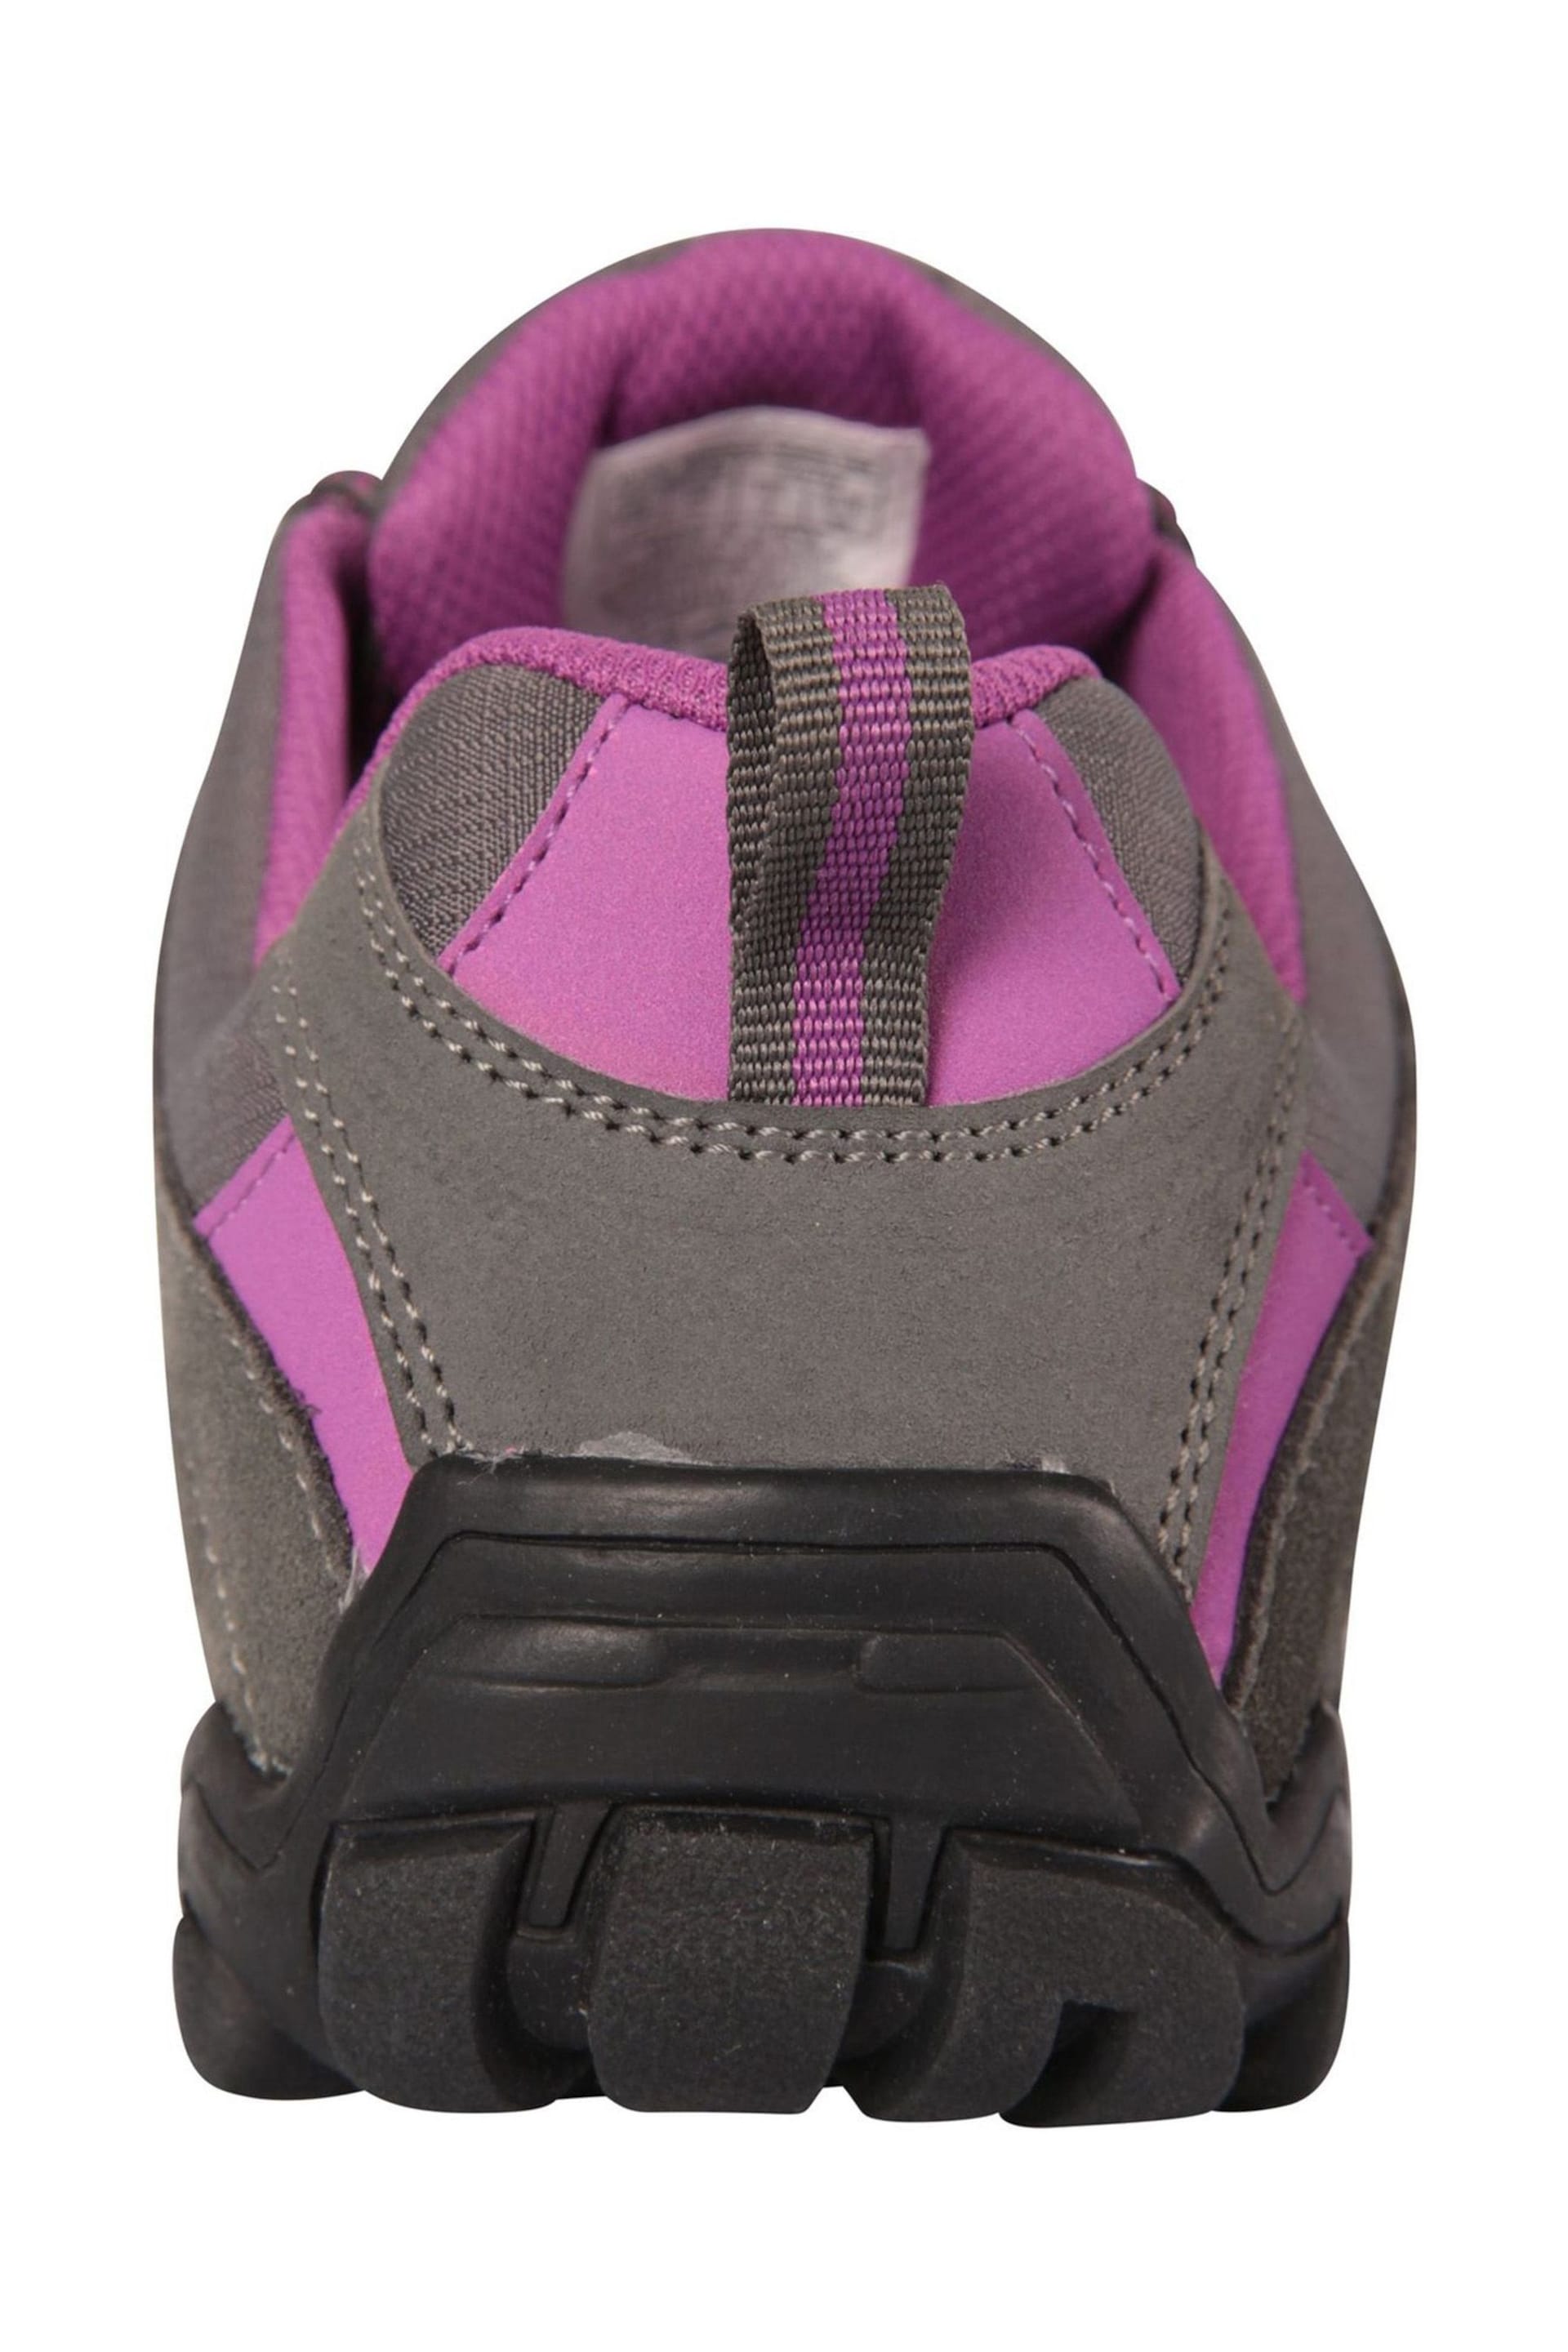 Mountain Warehouse Grey Womens Belfour Outdoor Walking Shoes - Image 3 of 4